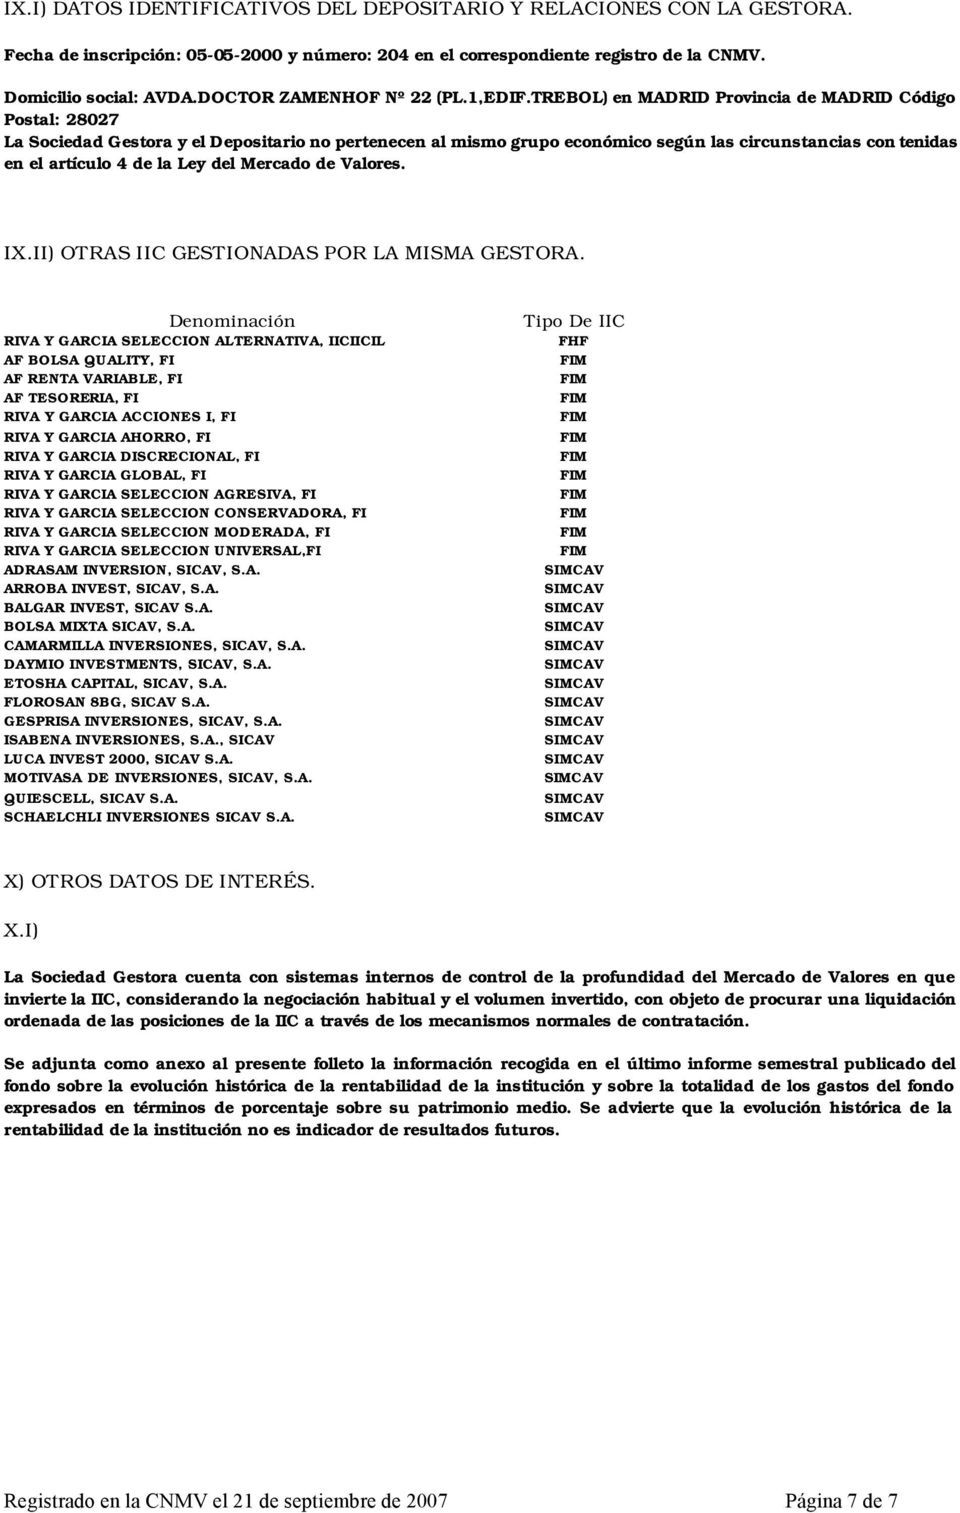 TREBOL) en MADRID Provincia de MADRID Código Postal: 28027 La Sociedad Gestora y el Depositario no pertenecen al mismo grupo económico según las circunstancias con tenidas en el artículo 4 de la Ley